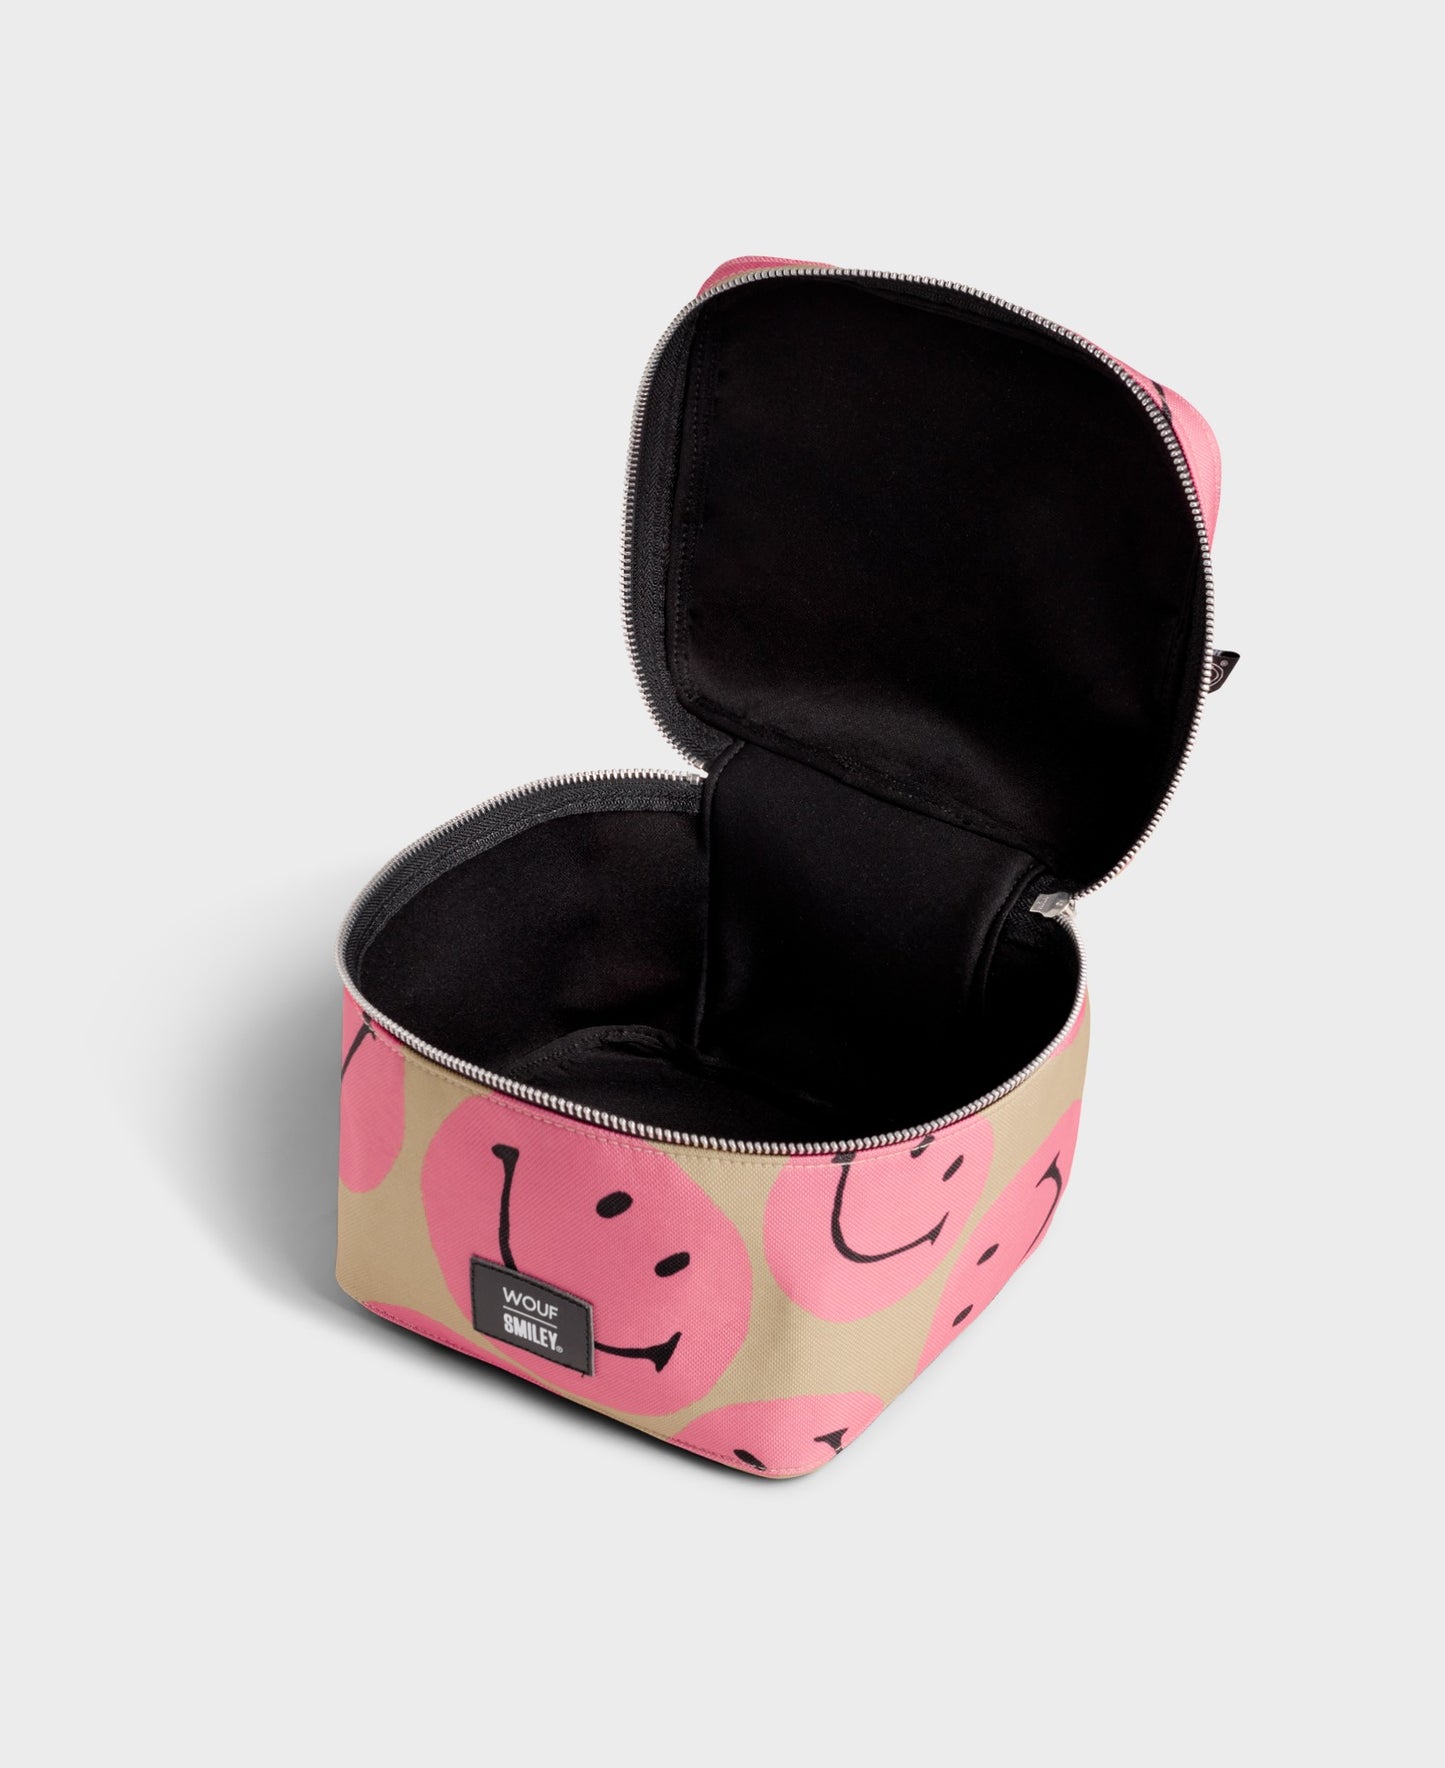 Smiley Pink Vanity Bag